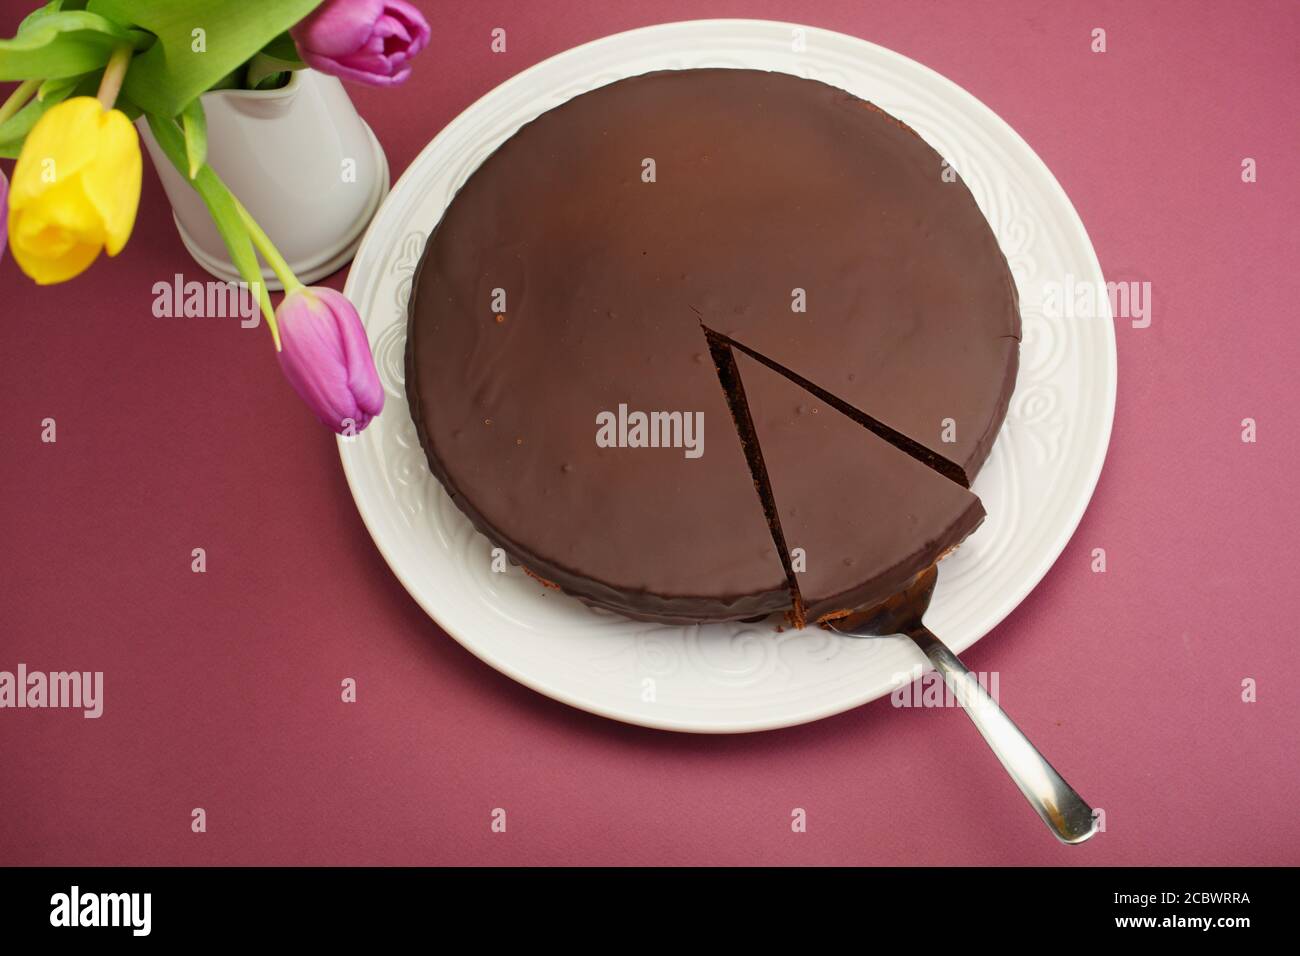 Gâteau au chocolat et un bouquet de tulipscake, chocolat, tranche, bouquet, brun, anniversaire, plat, dessus de lit, floral Banque D'Images